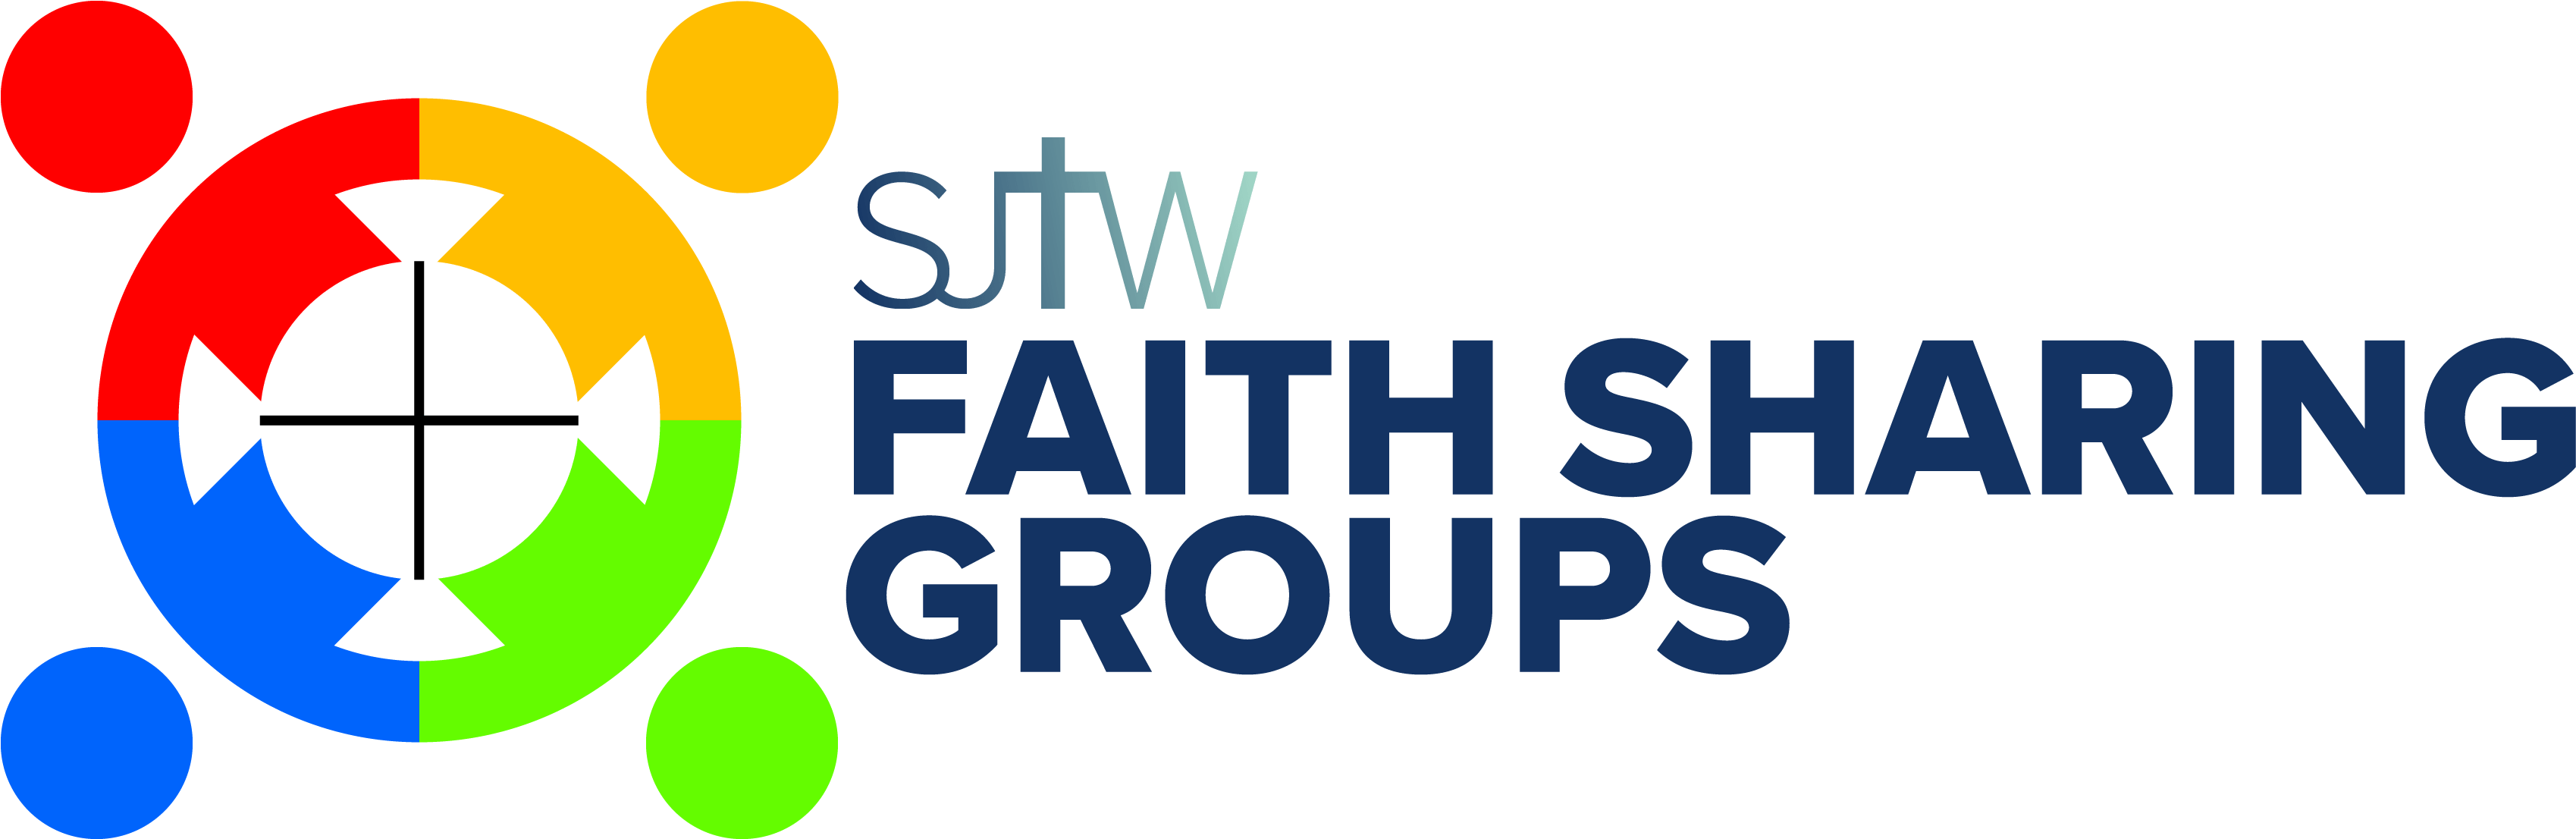 Small Groups Logo - Circle (3707x1500)